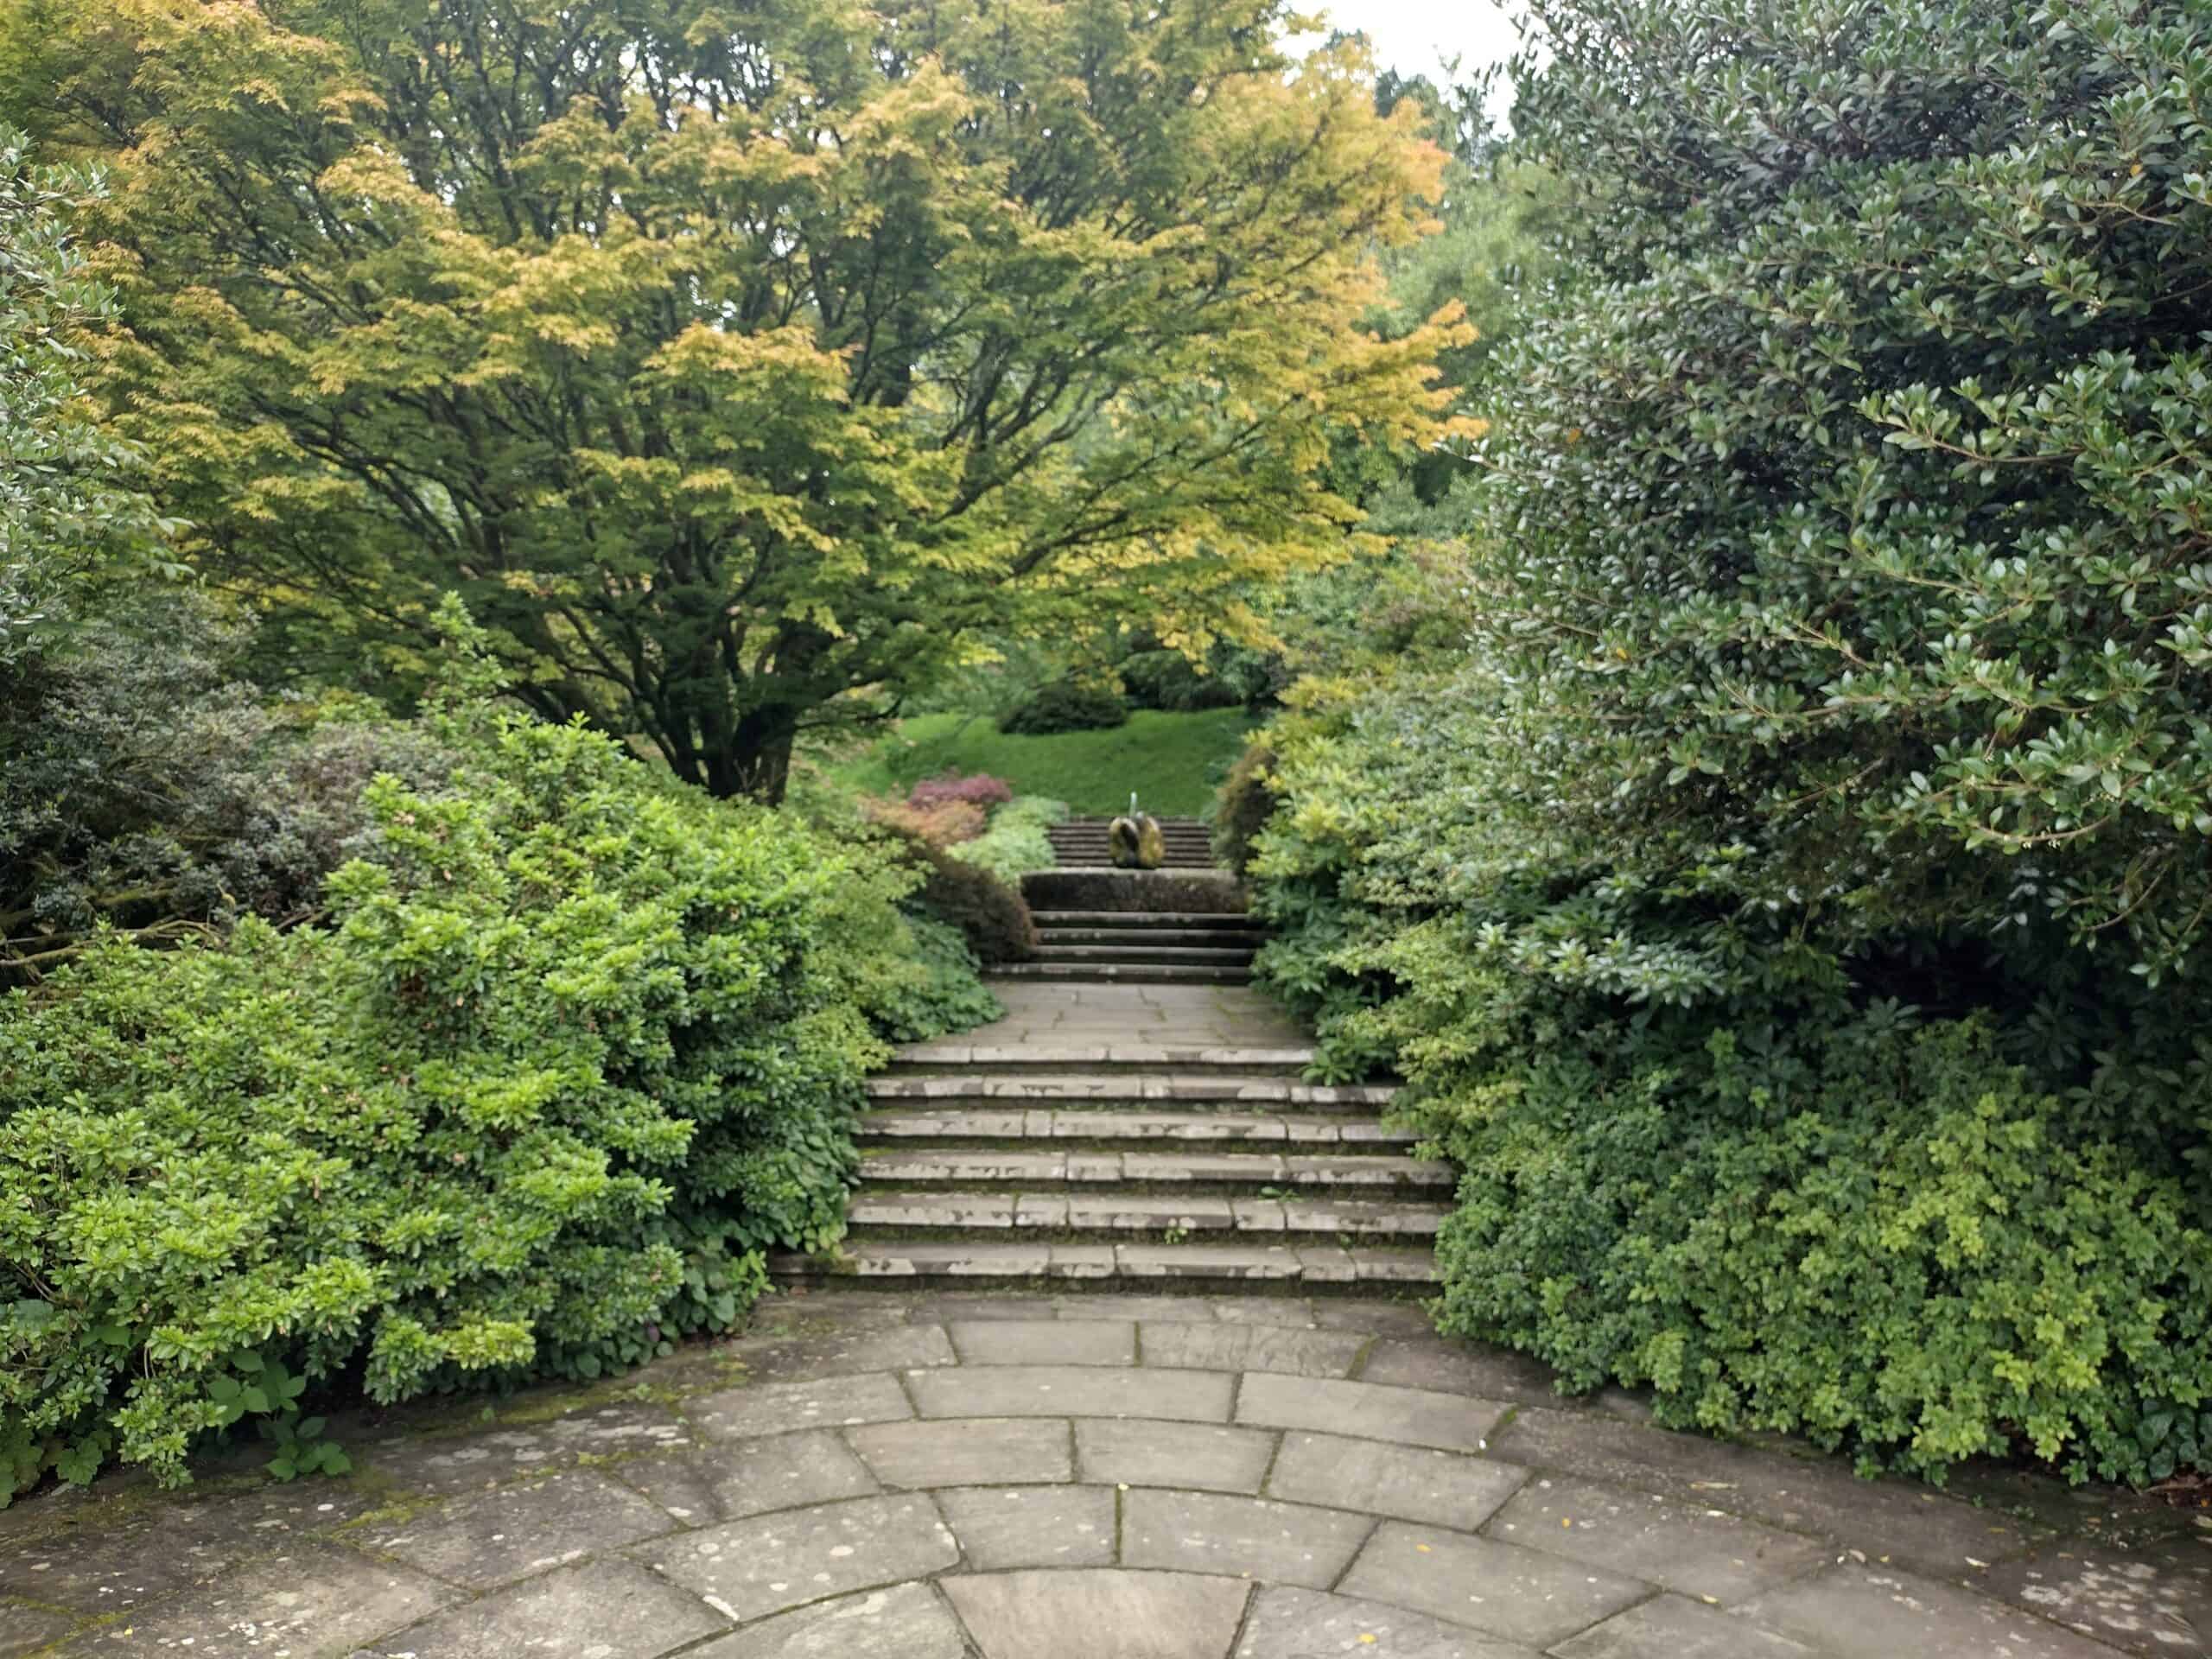 Dartington estate gardens, steps with trees